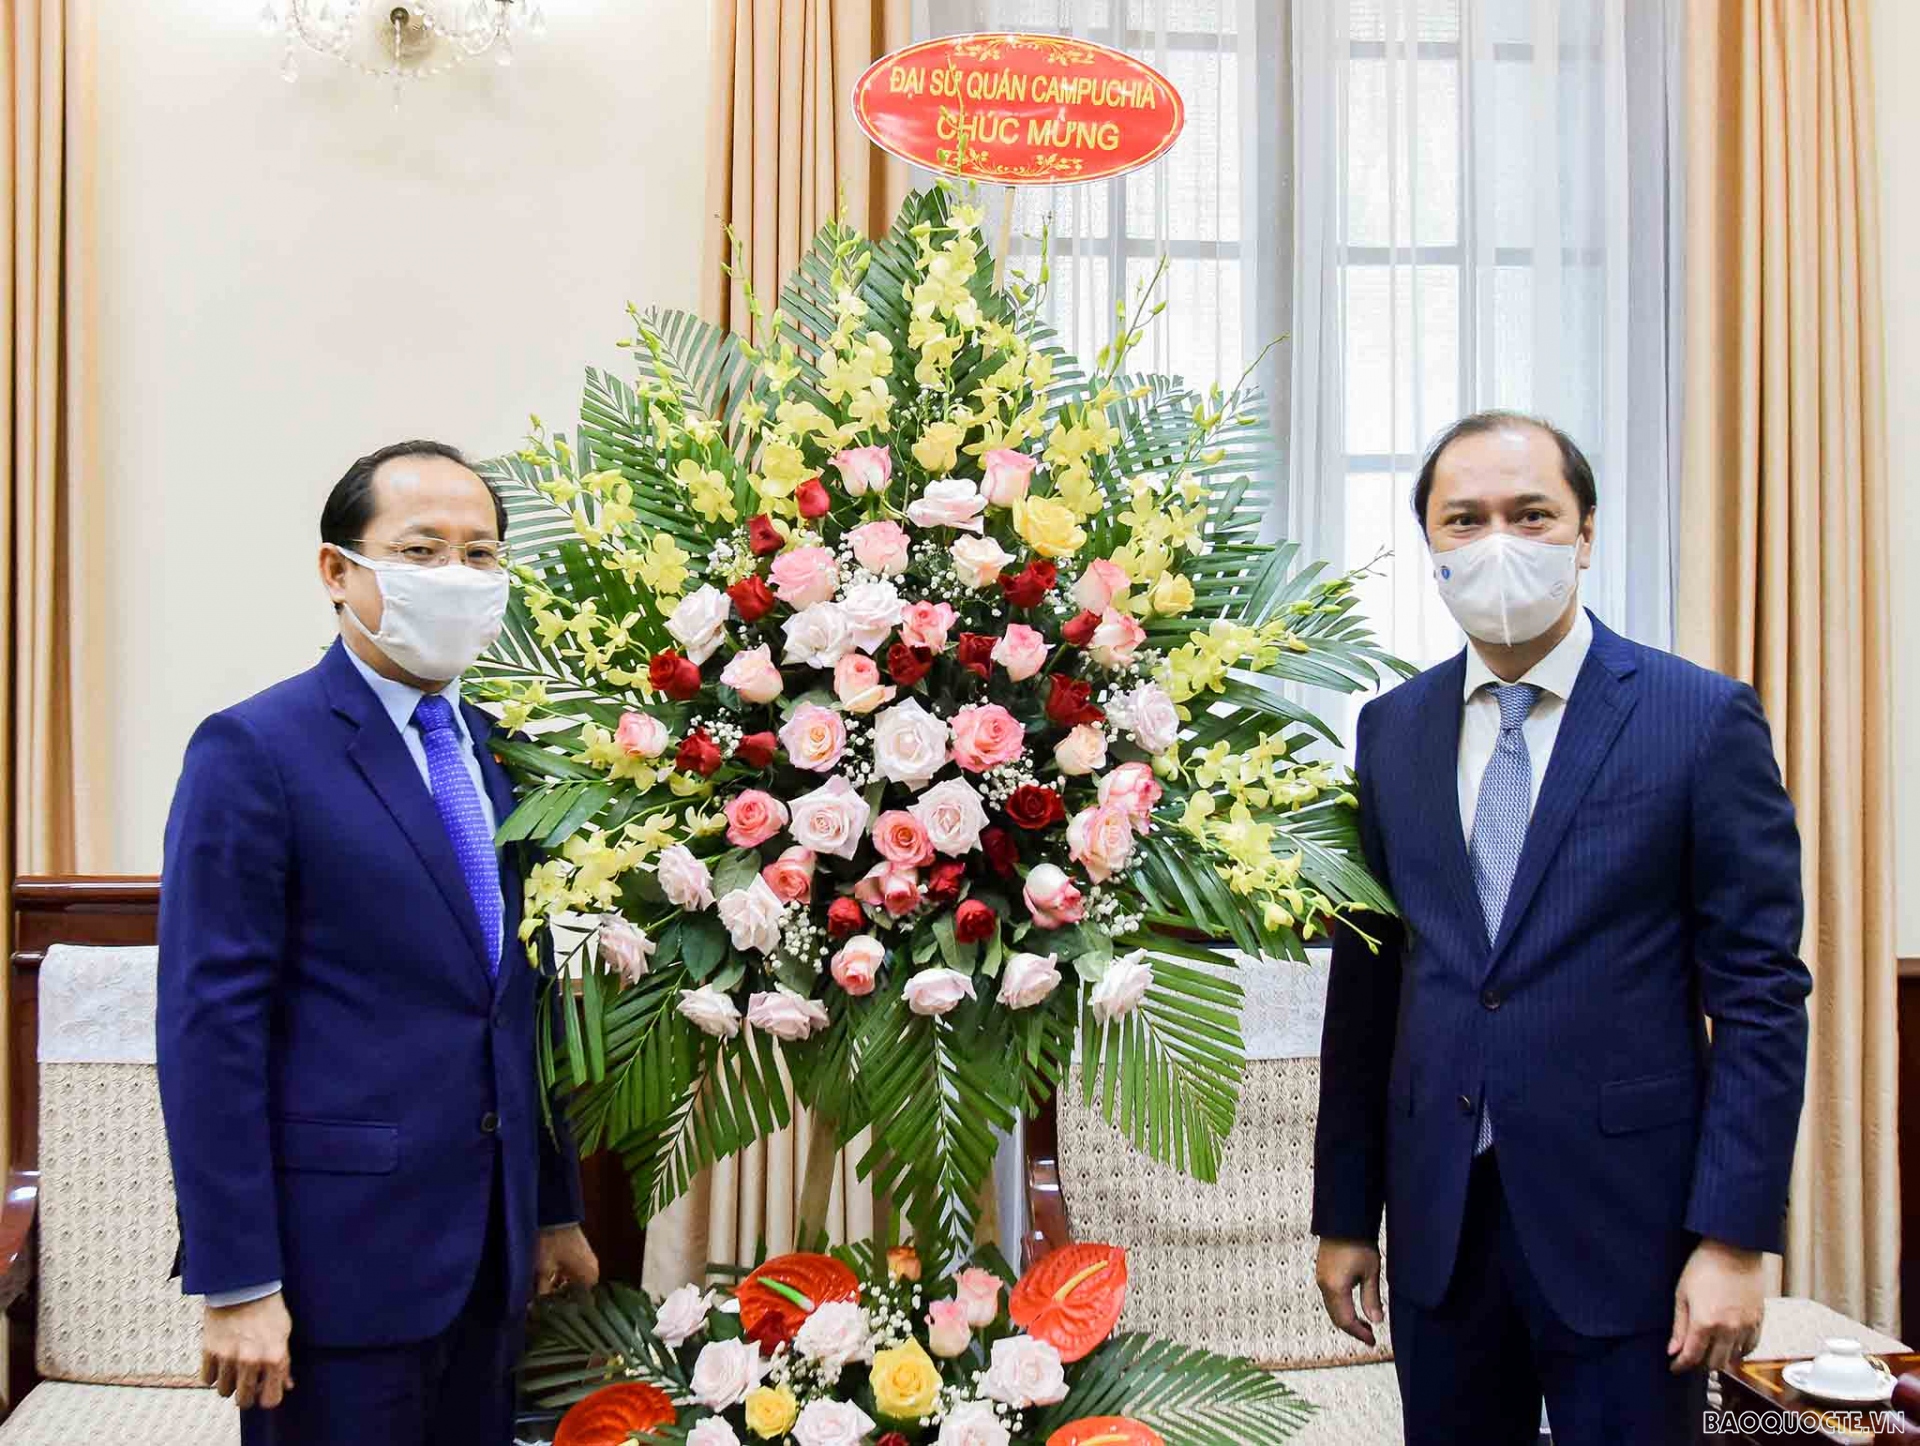 Đại sứ Campuchia tại Việt Nam chúc mừng Quốc khánh Việt Nam